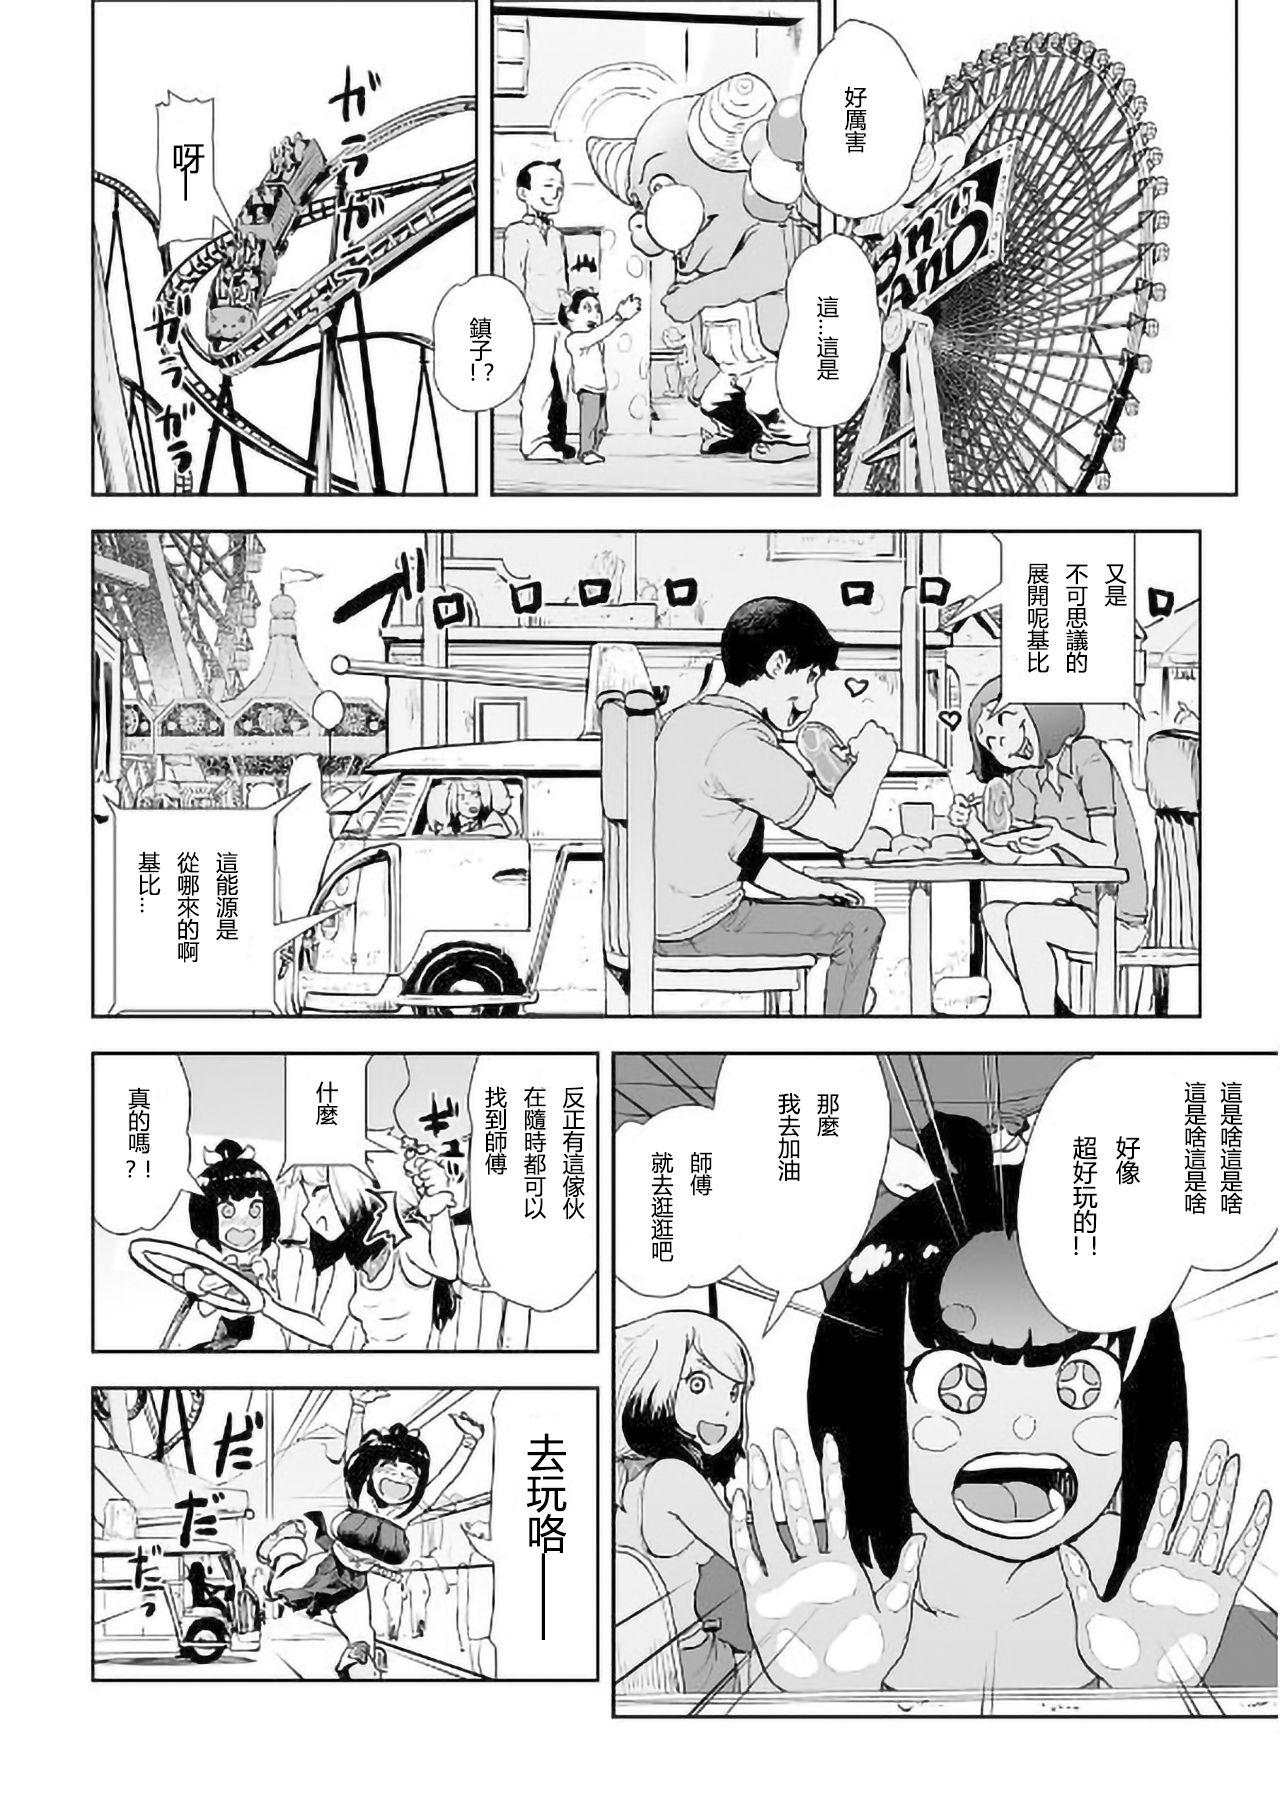 Tia MOMO! Daiyonwa Youkoso Oniland no Maki Vergon - Page 7